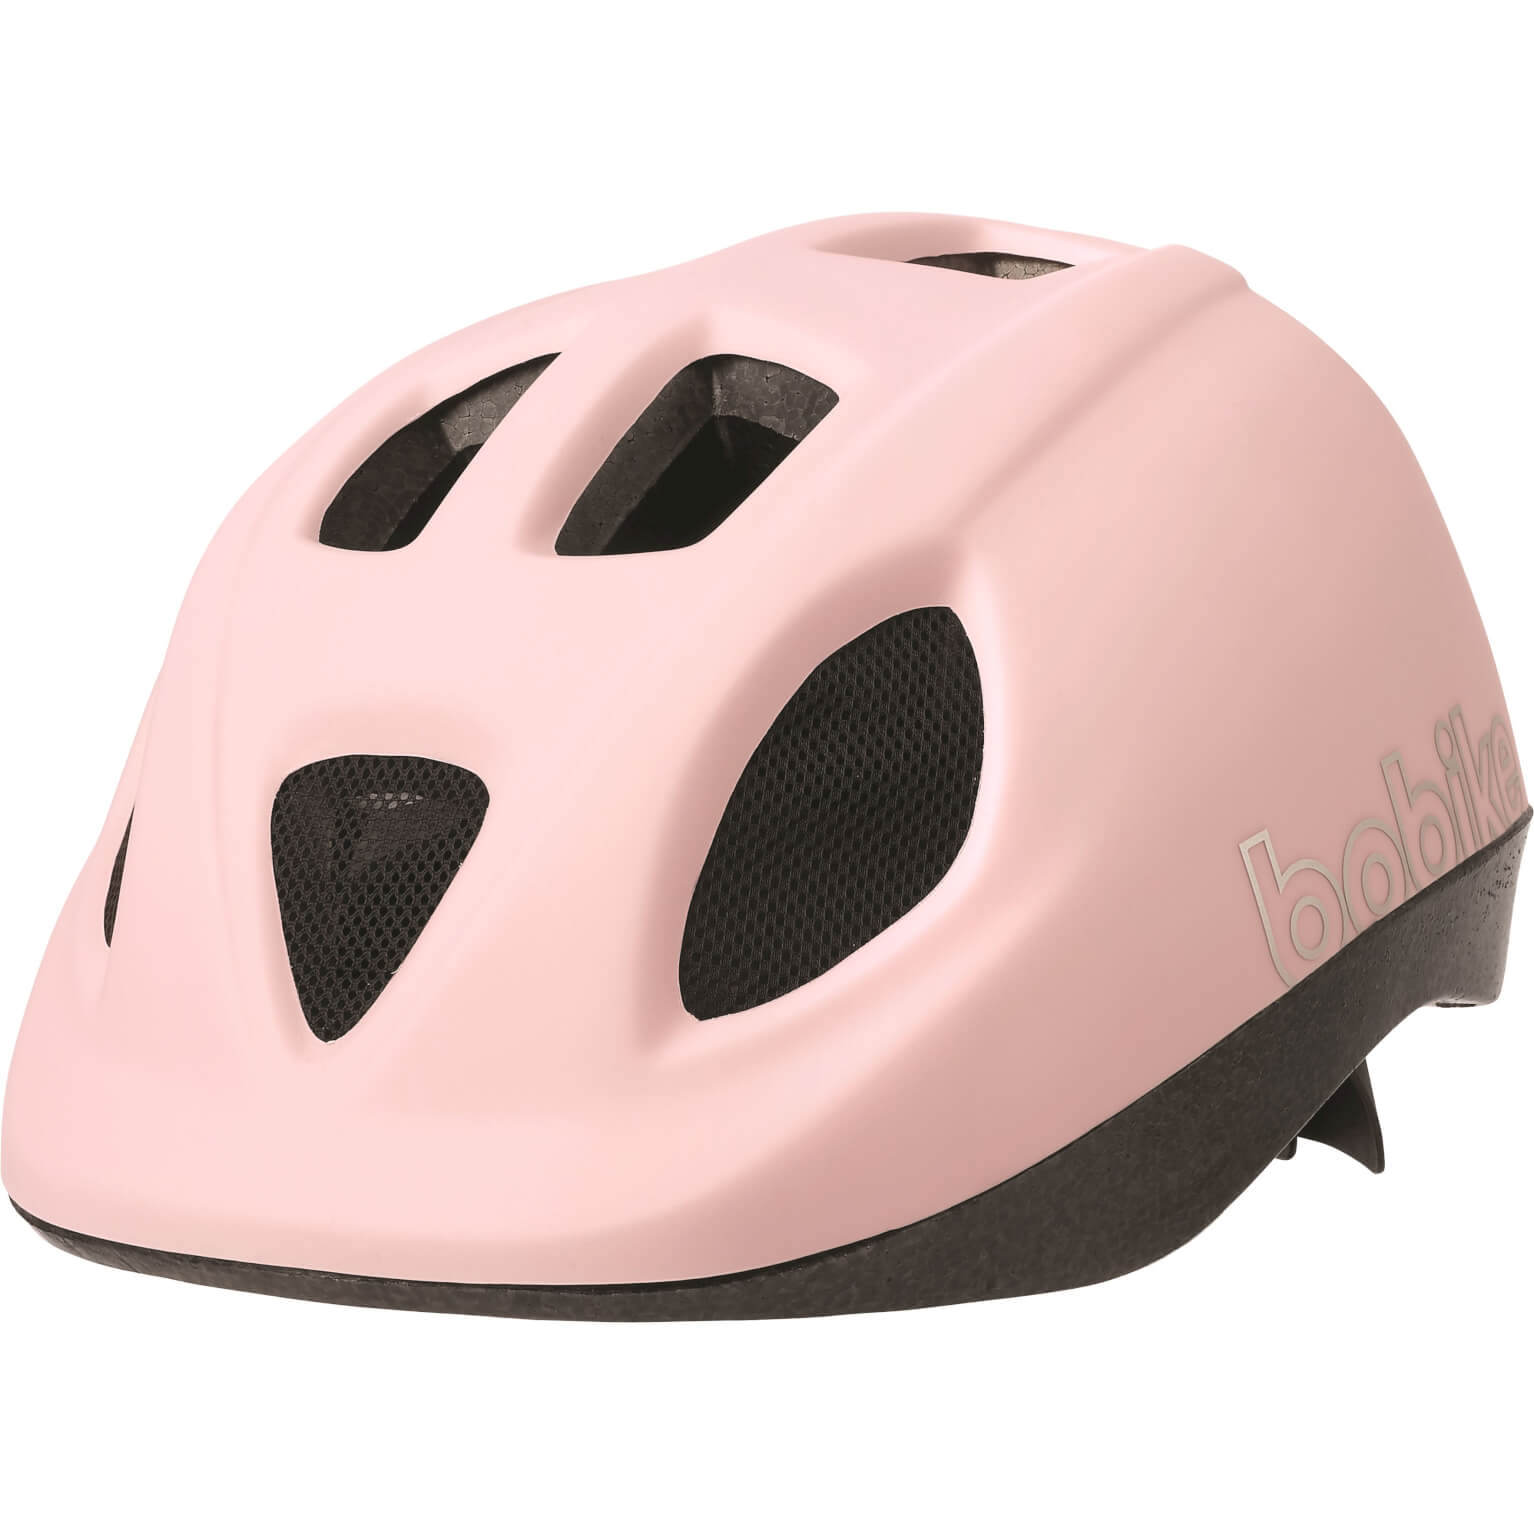 Bobike helm Go S 52-56 cm pink